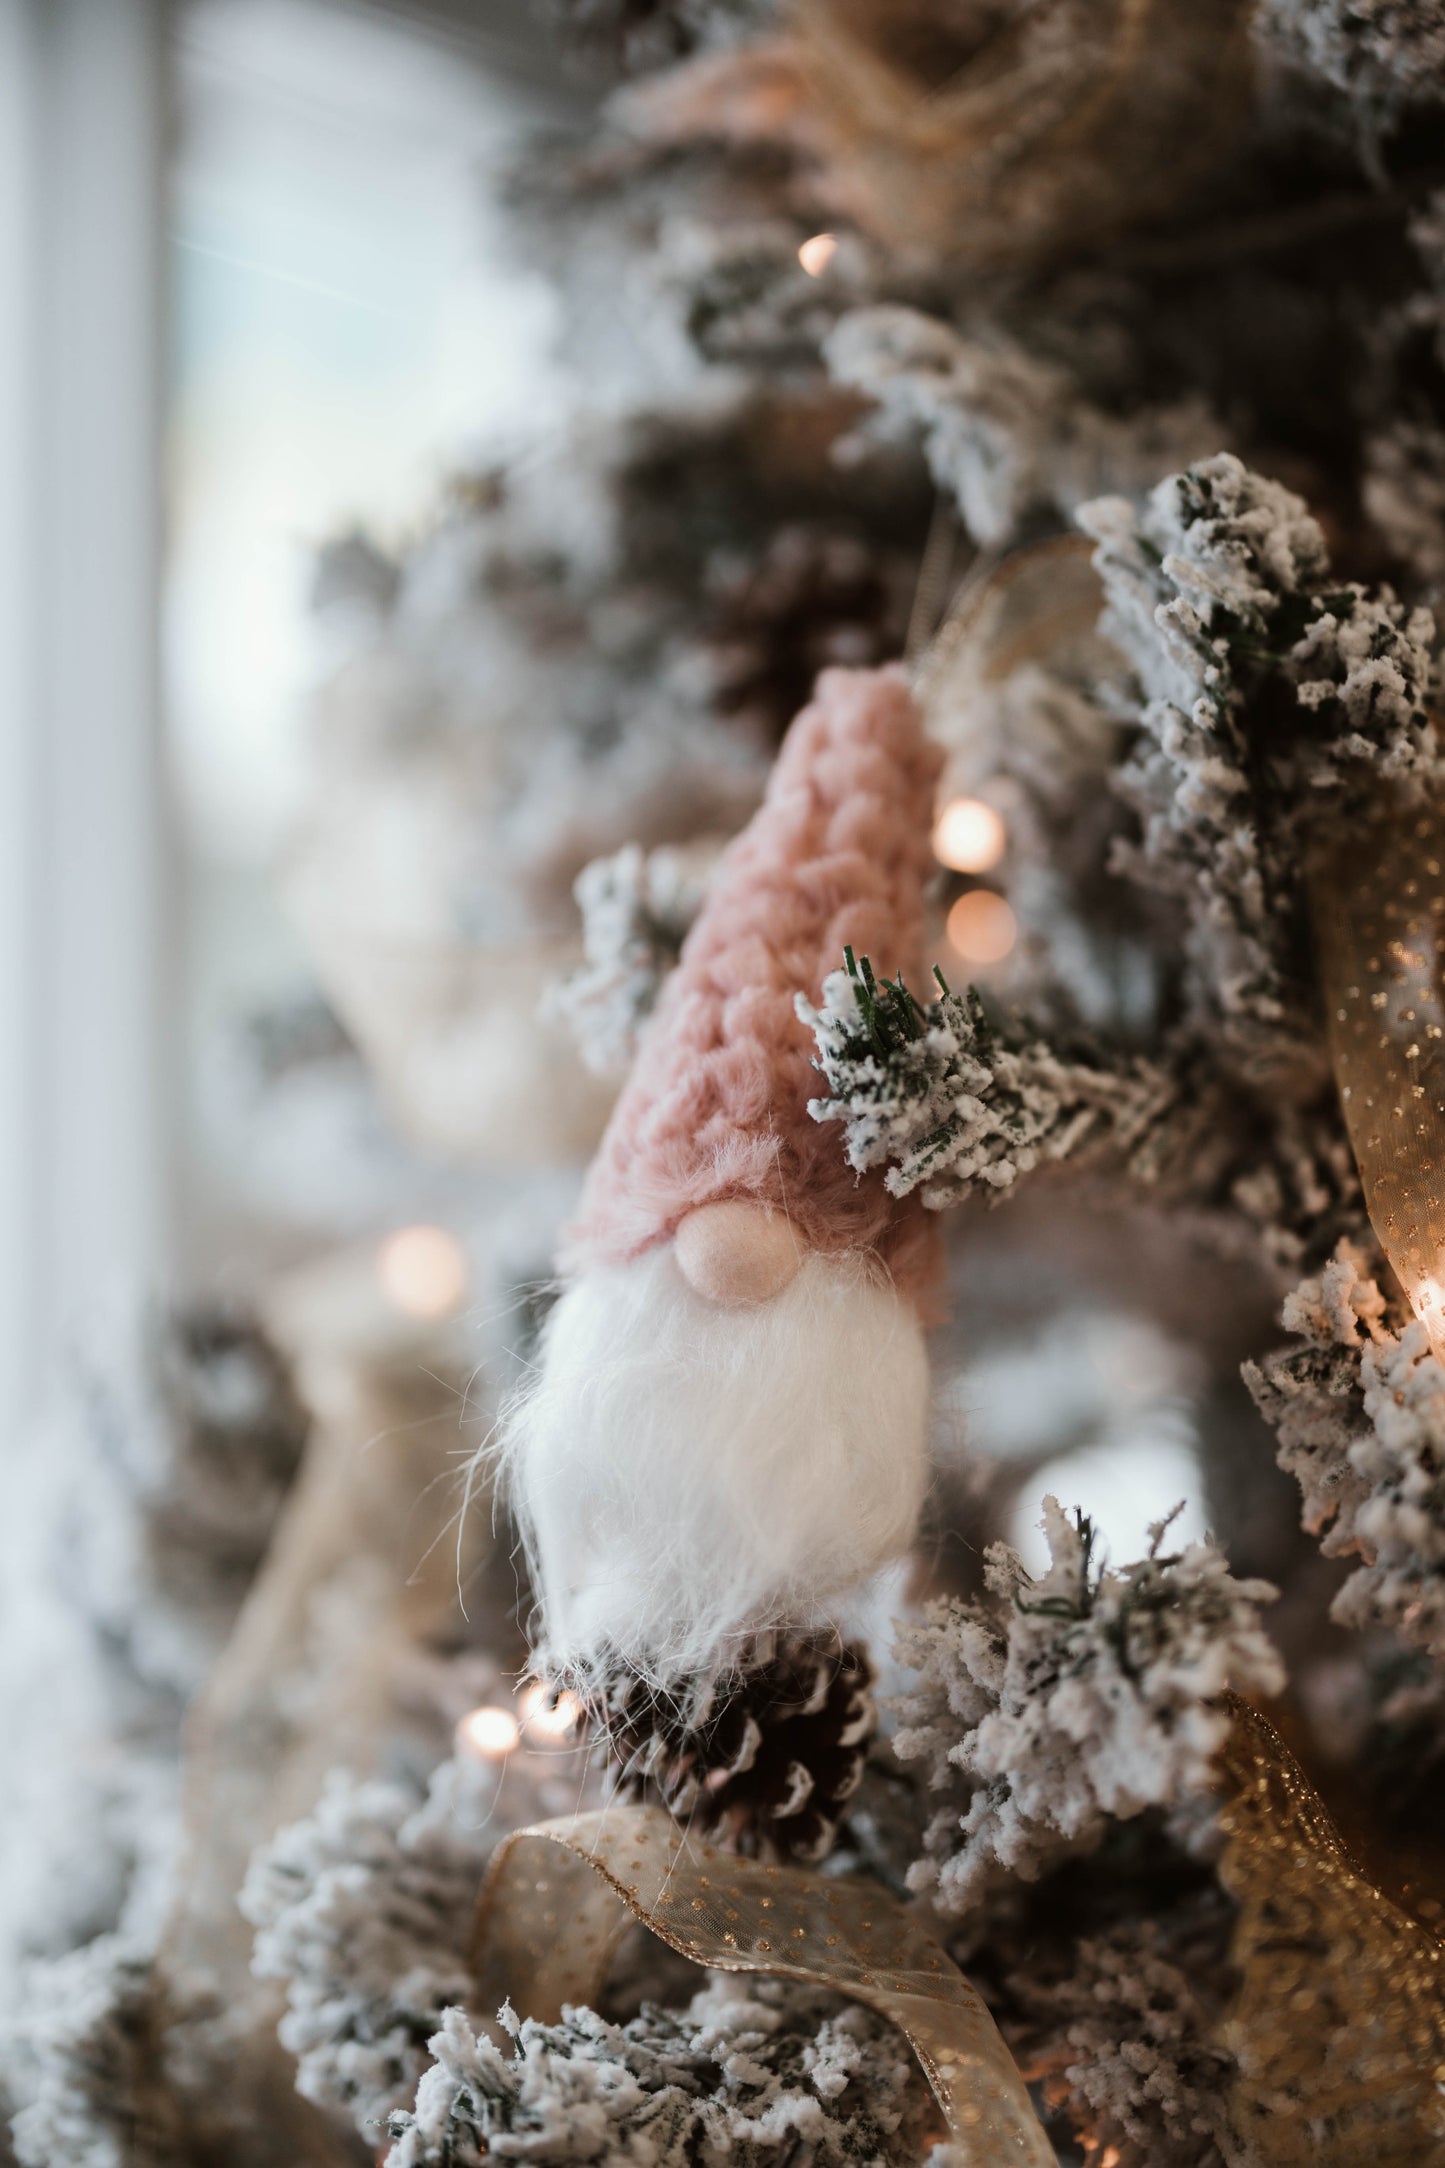 Holiday Tree Ornaments